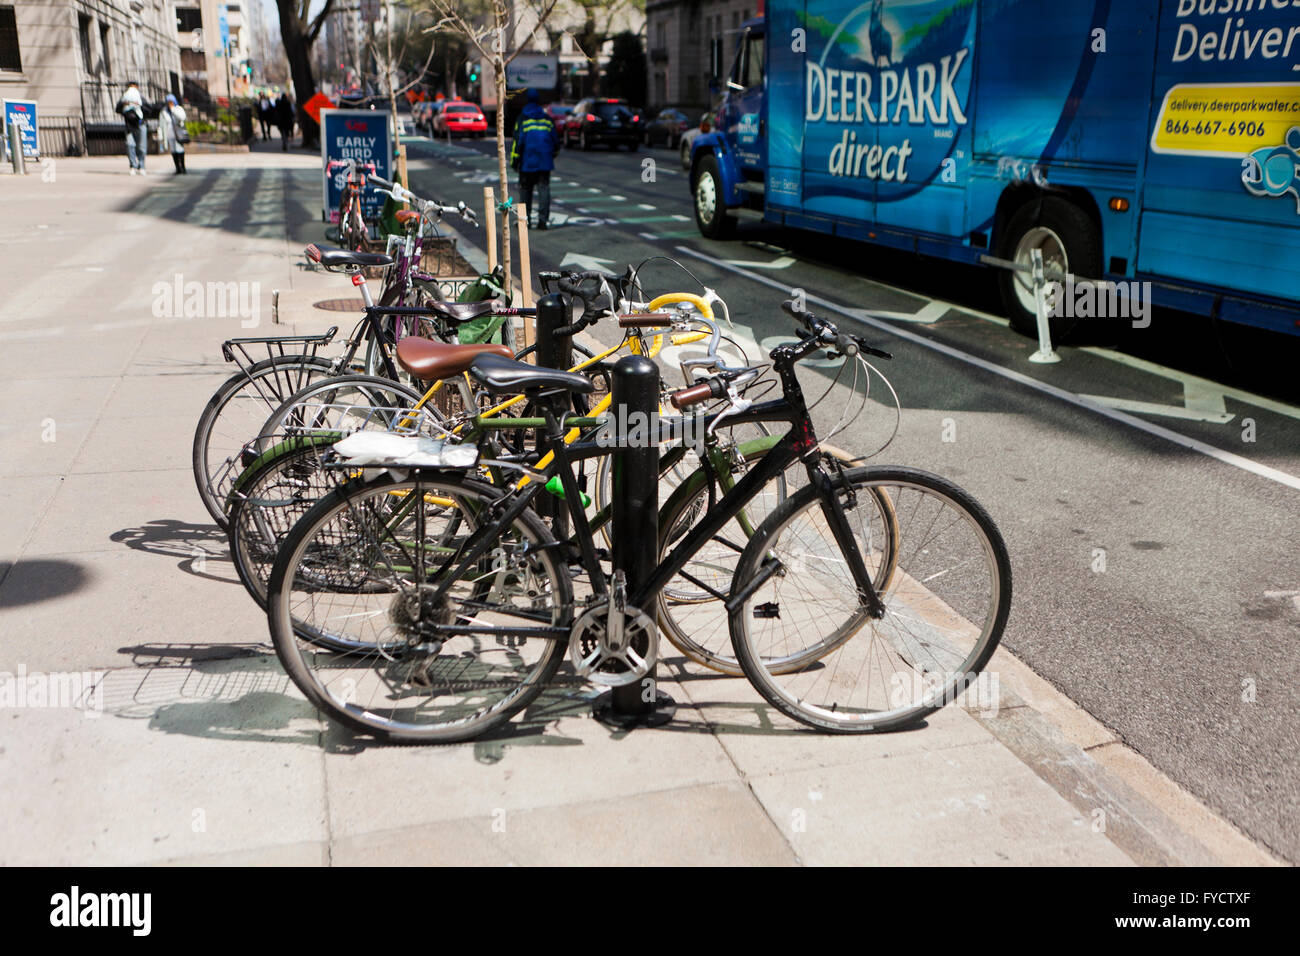 Le biciclette parcheggiate sul marciapiede urbano - Washington DC, Stati Uniti d'America Foto Stock